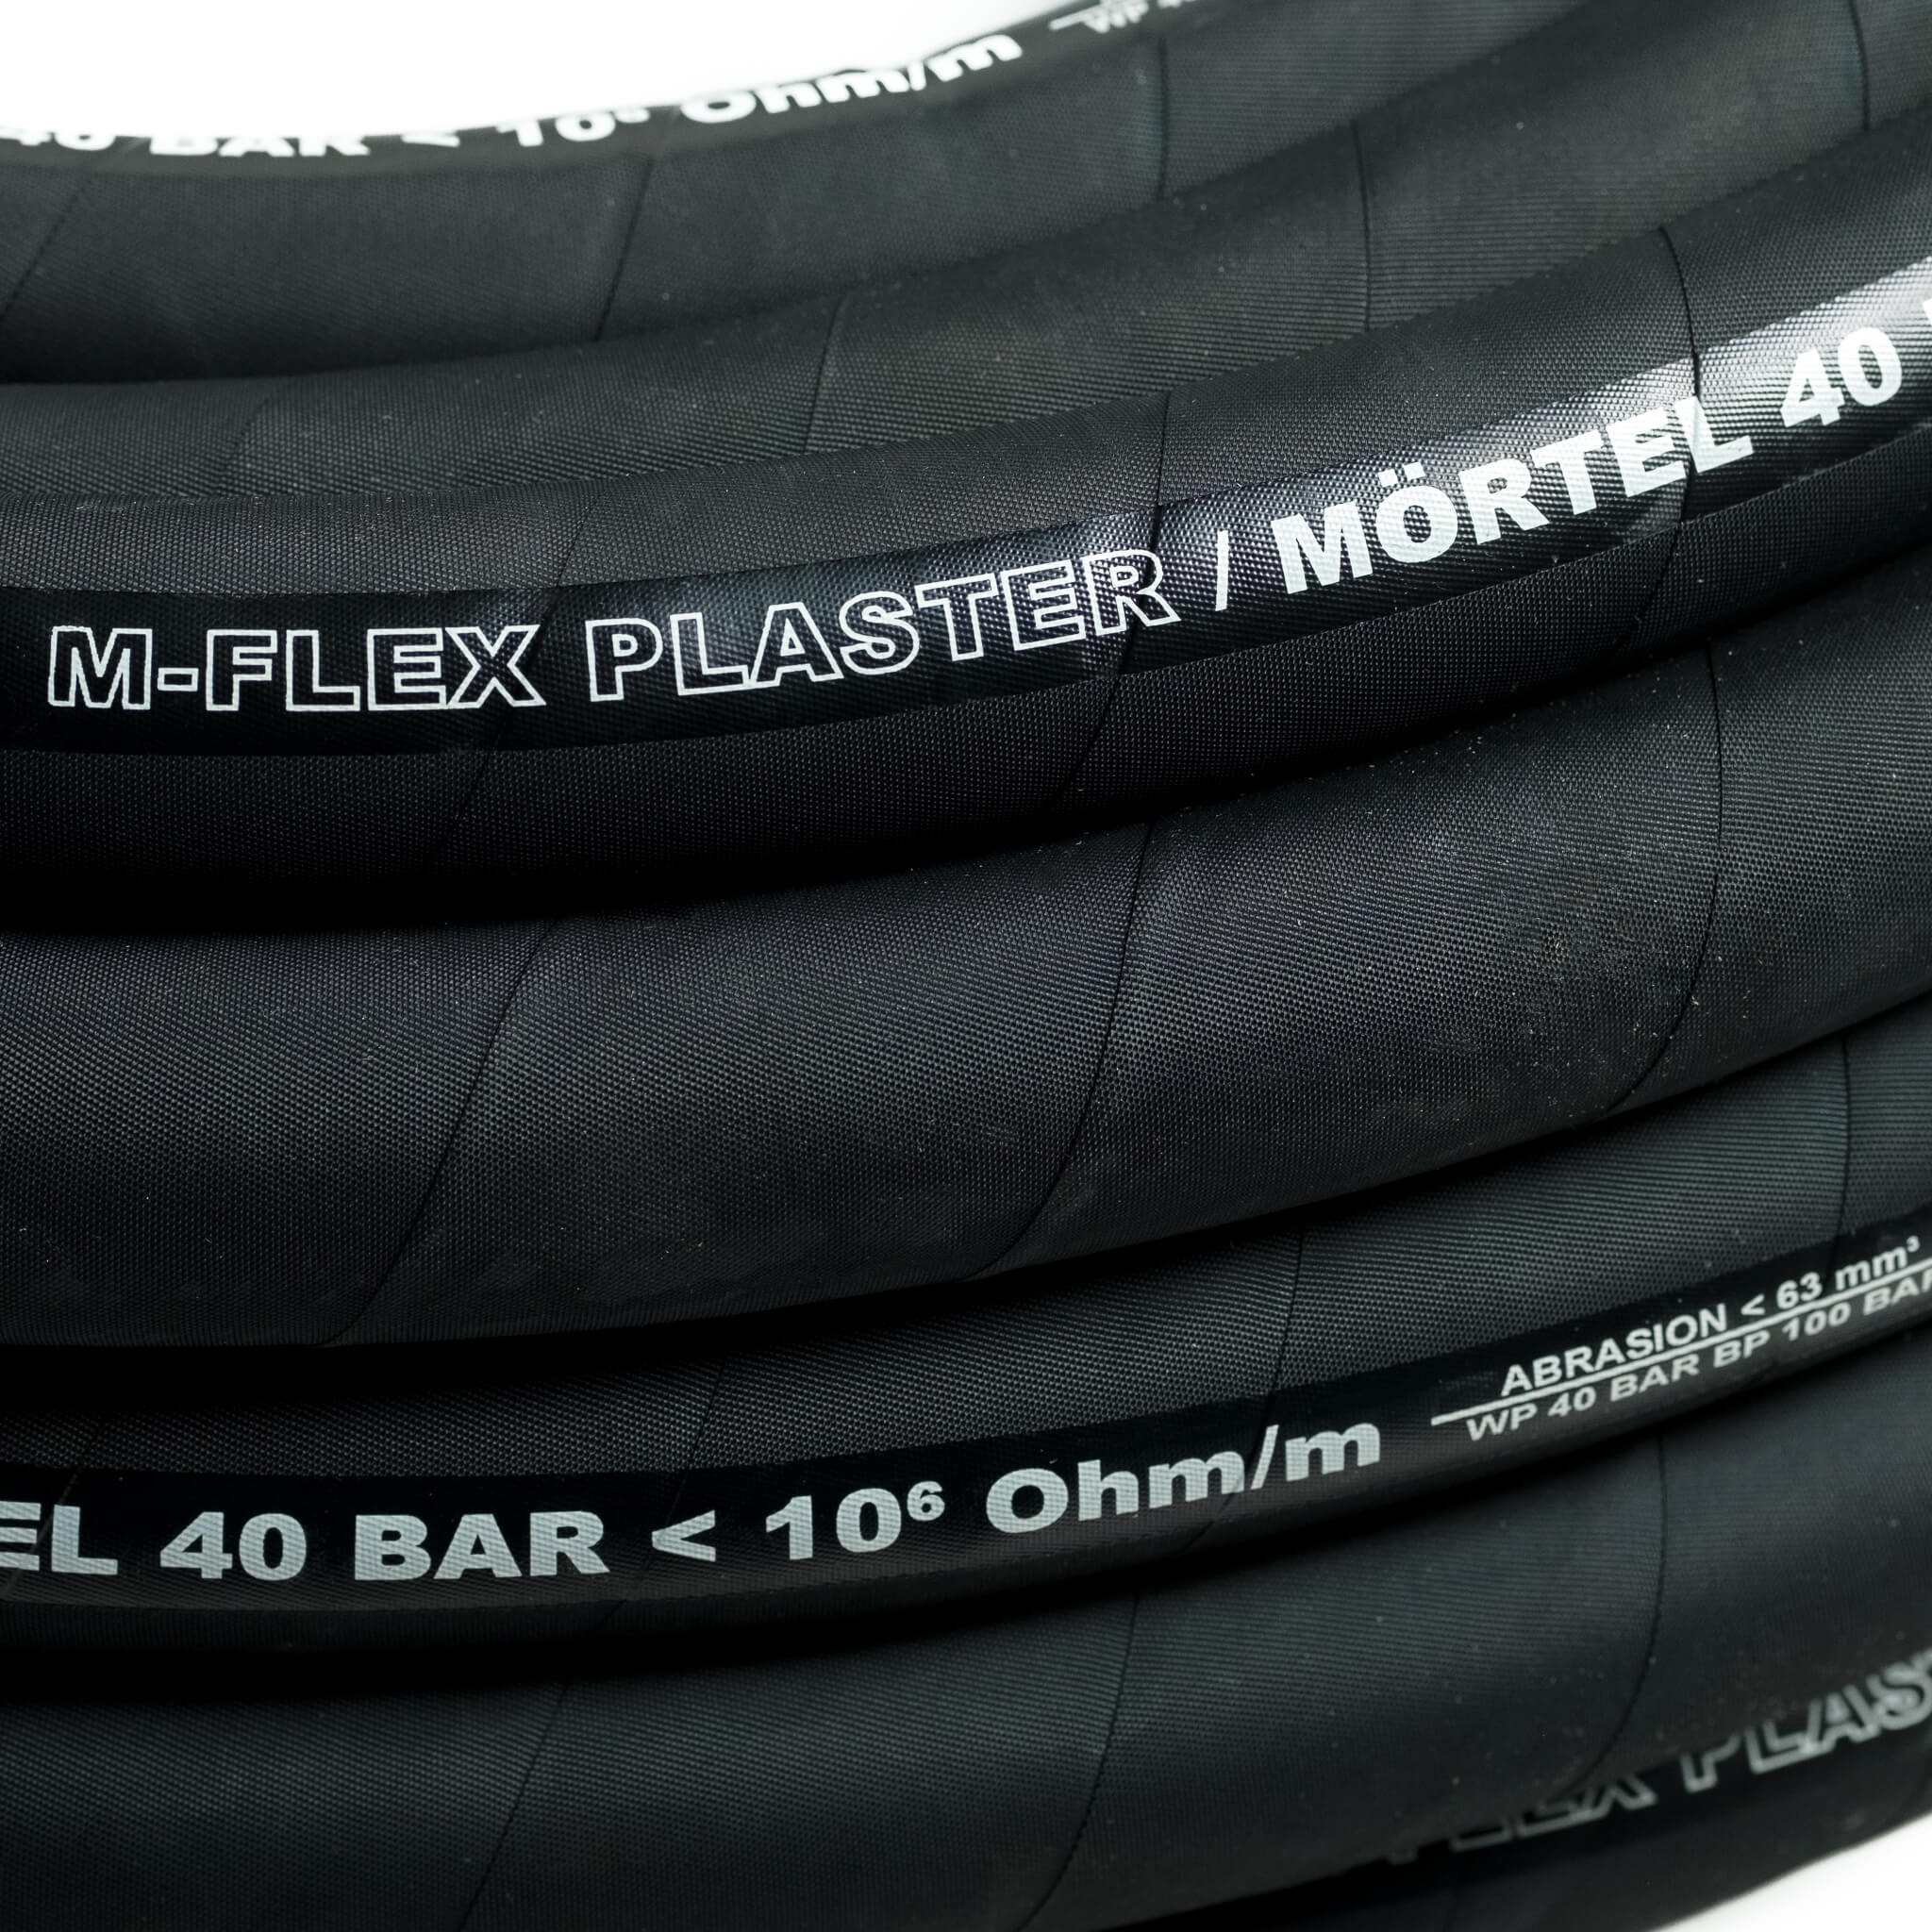 Wąż do tynkowania typ: M-FLEX PLASTER 40 bar